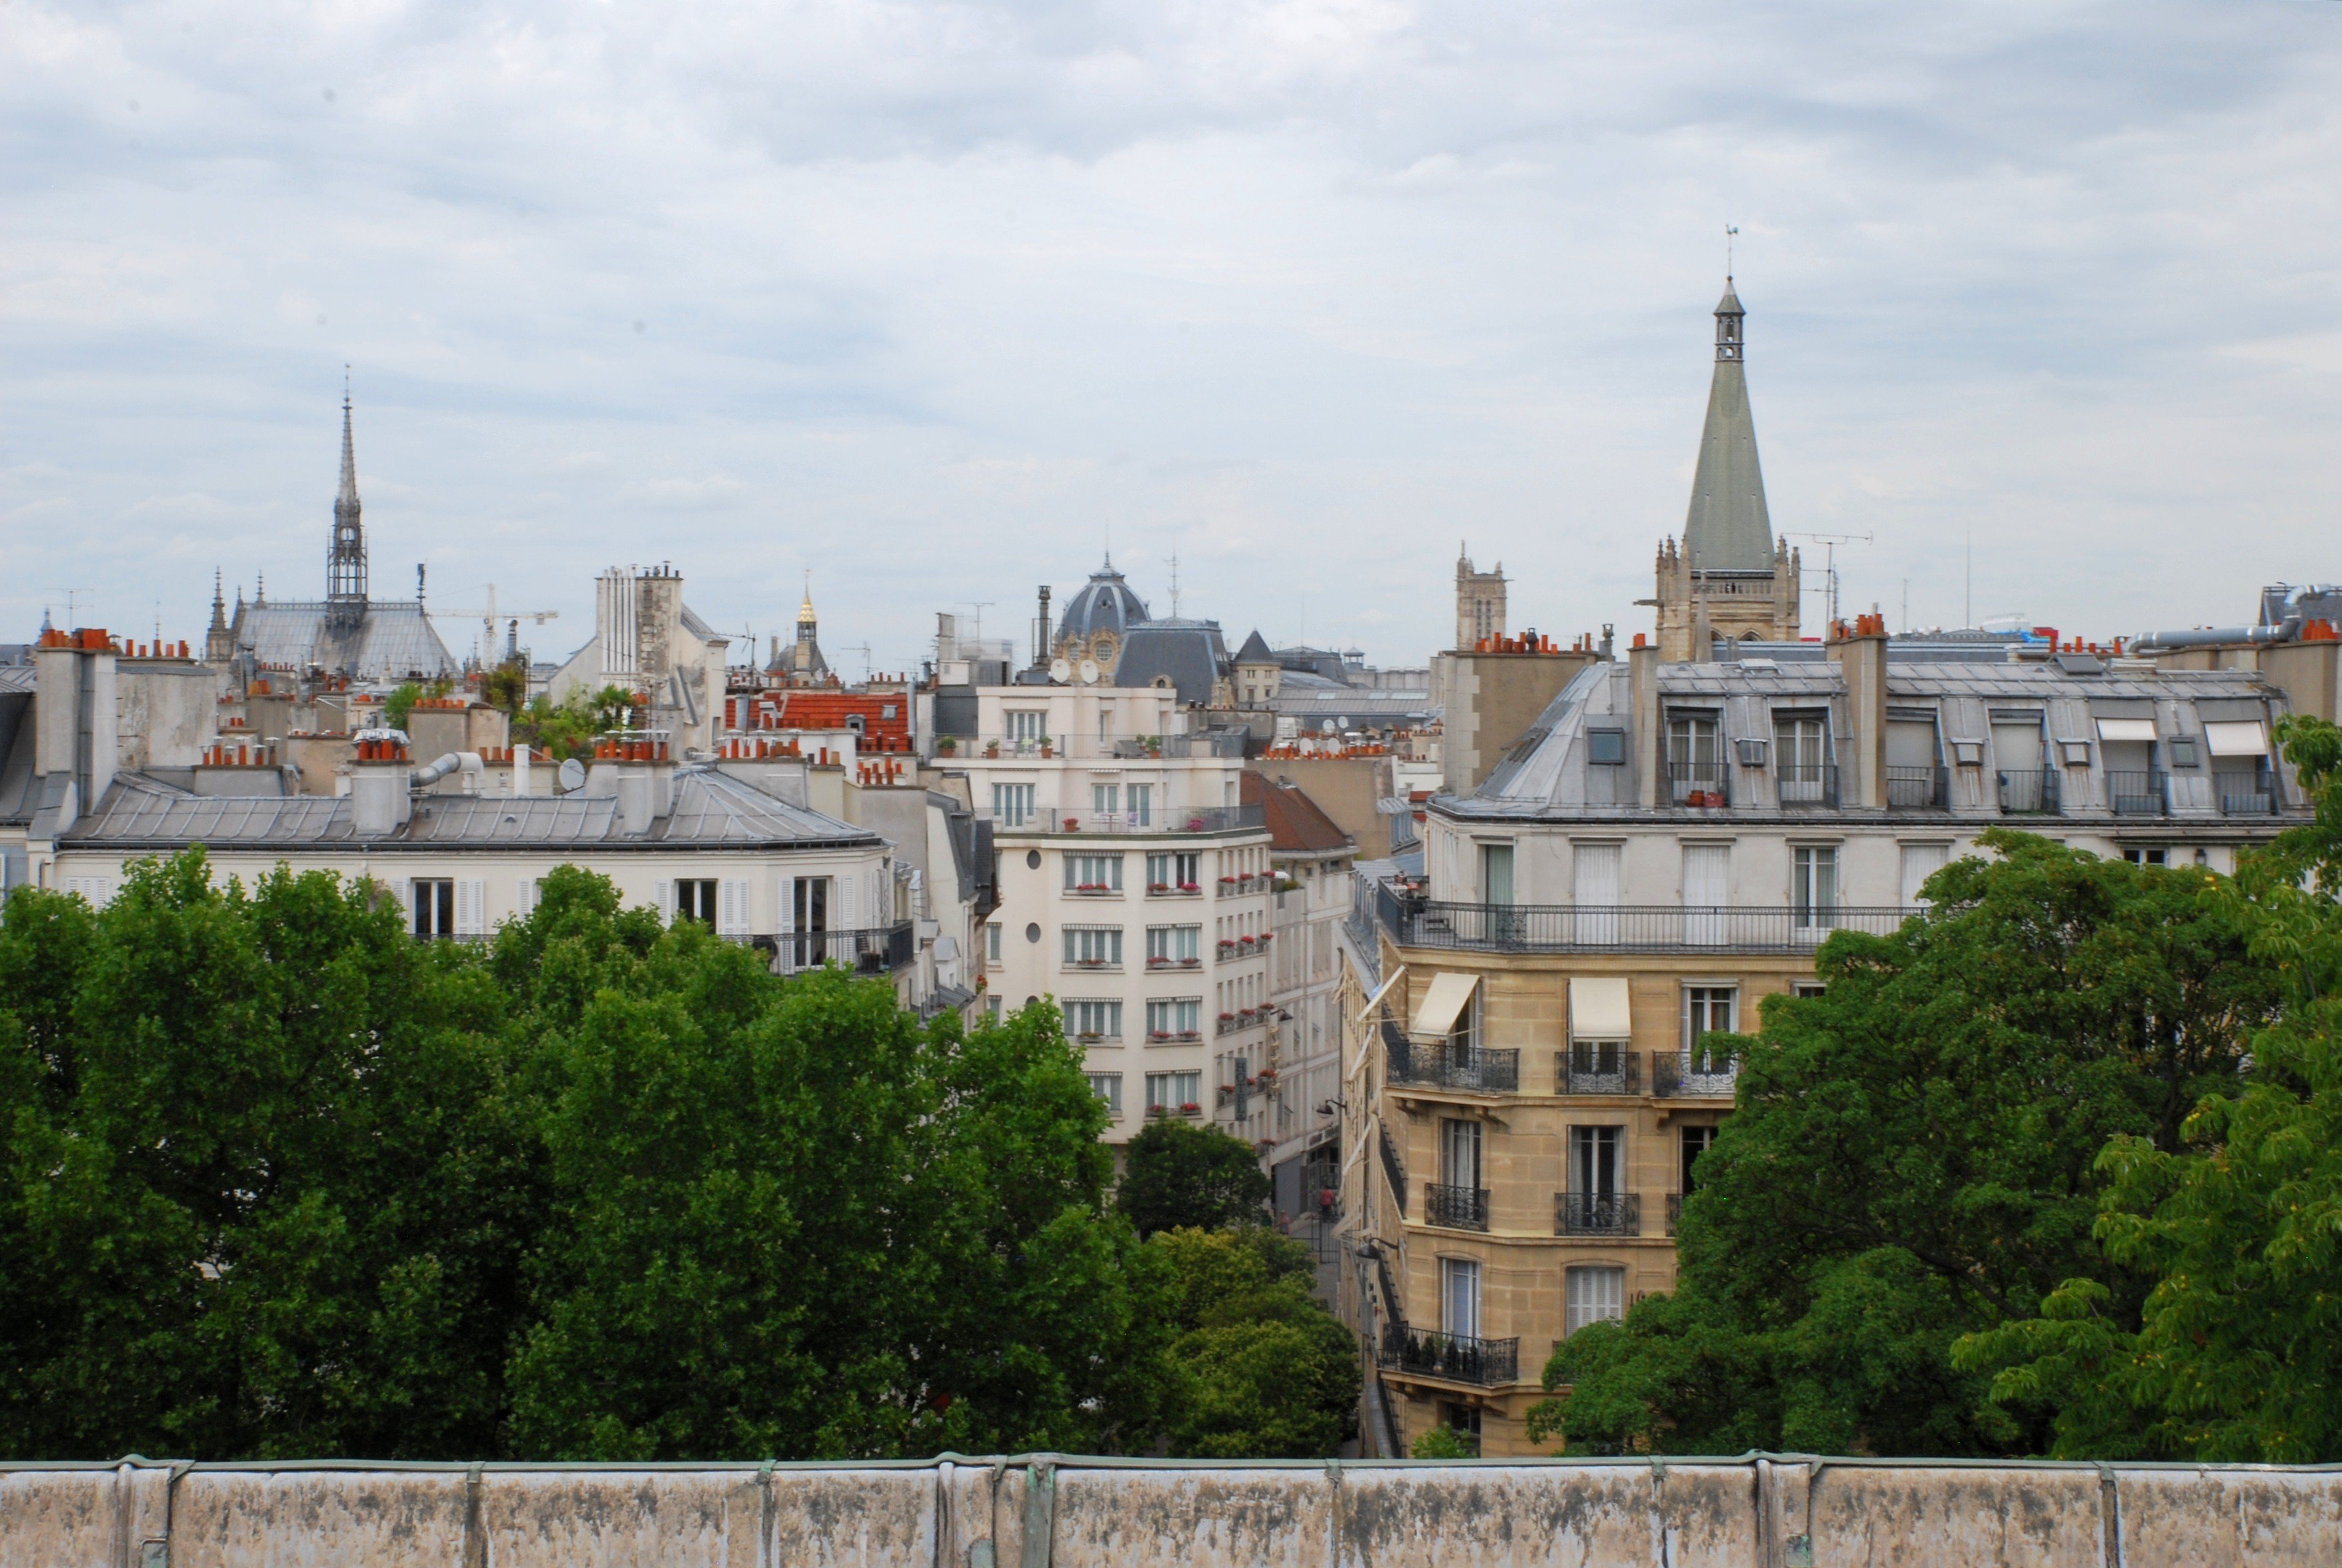 Des immeubles parisiens au-delà d'un rideau d'arbres, avec quelques édifices qui dépassent : la Sainte-Chapelle sur la gauche, l'église Saint-Séverin sur la droite et le dôme du tribunal de commerce de Paris entre les deux.